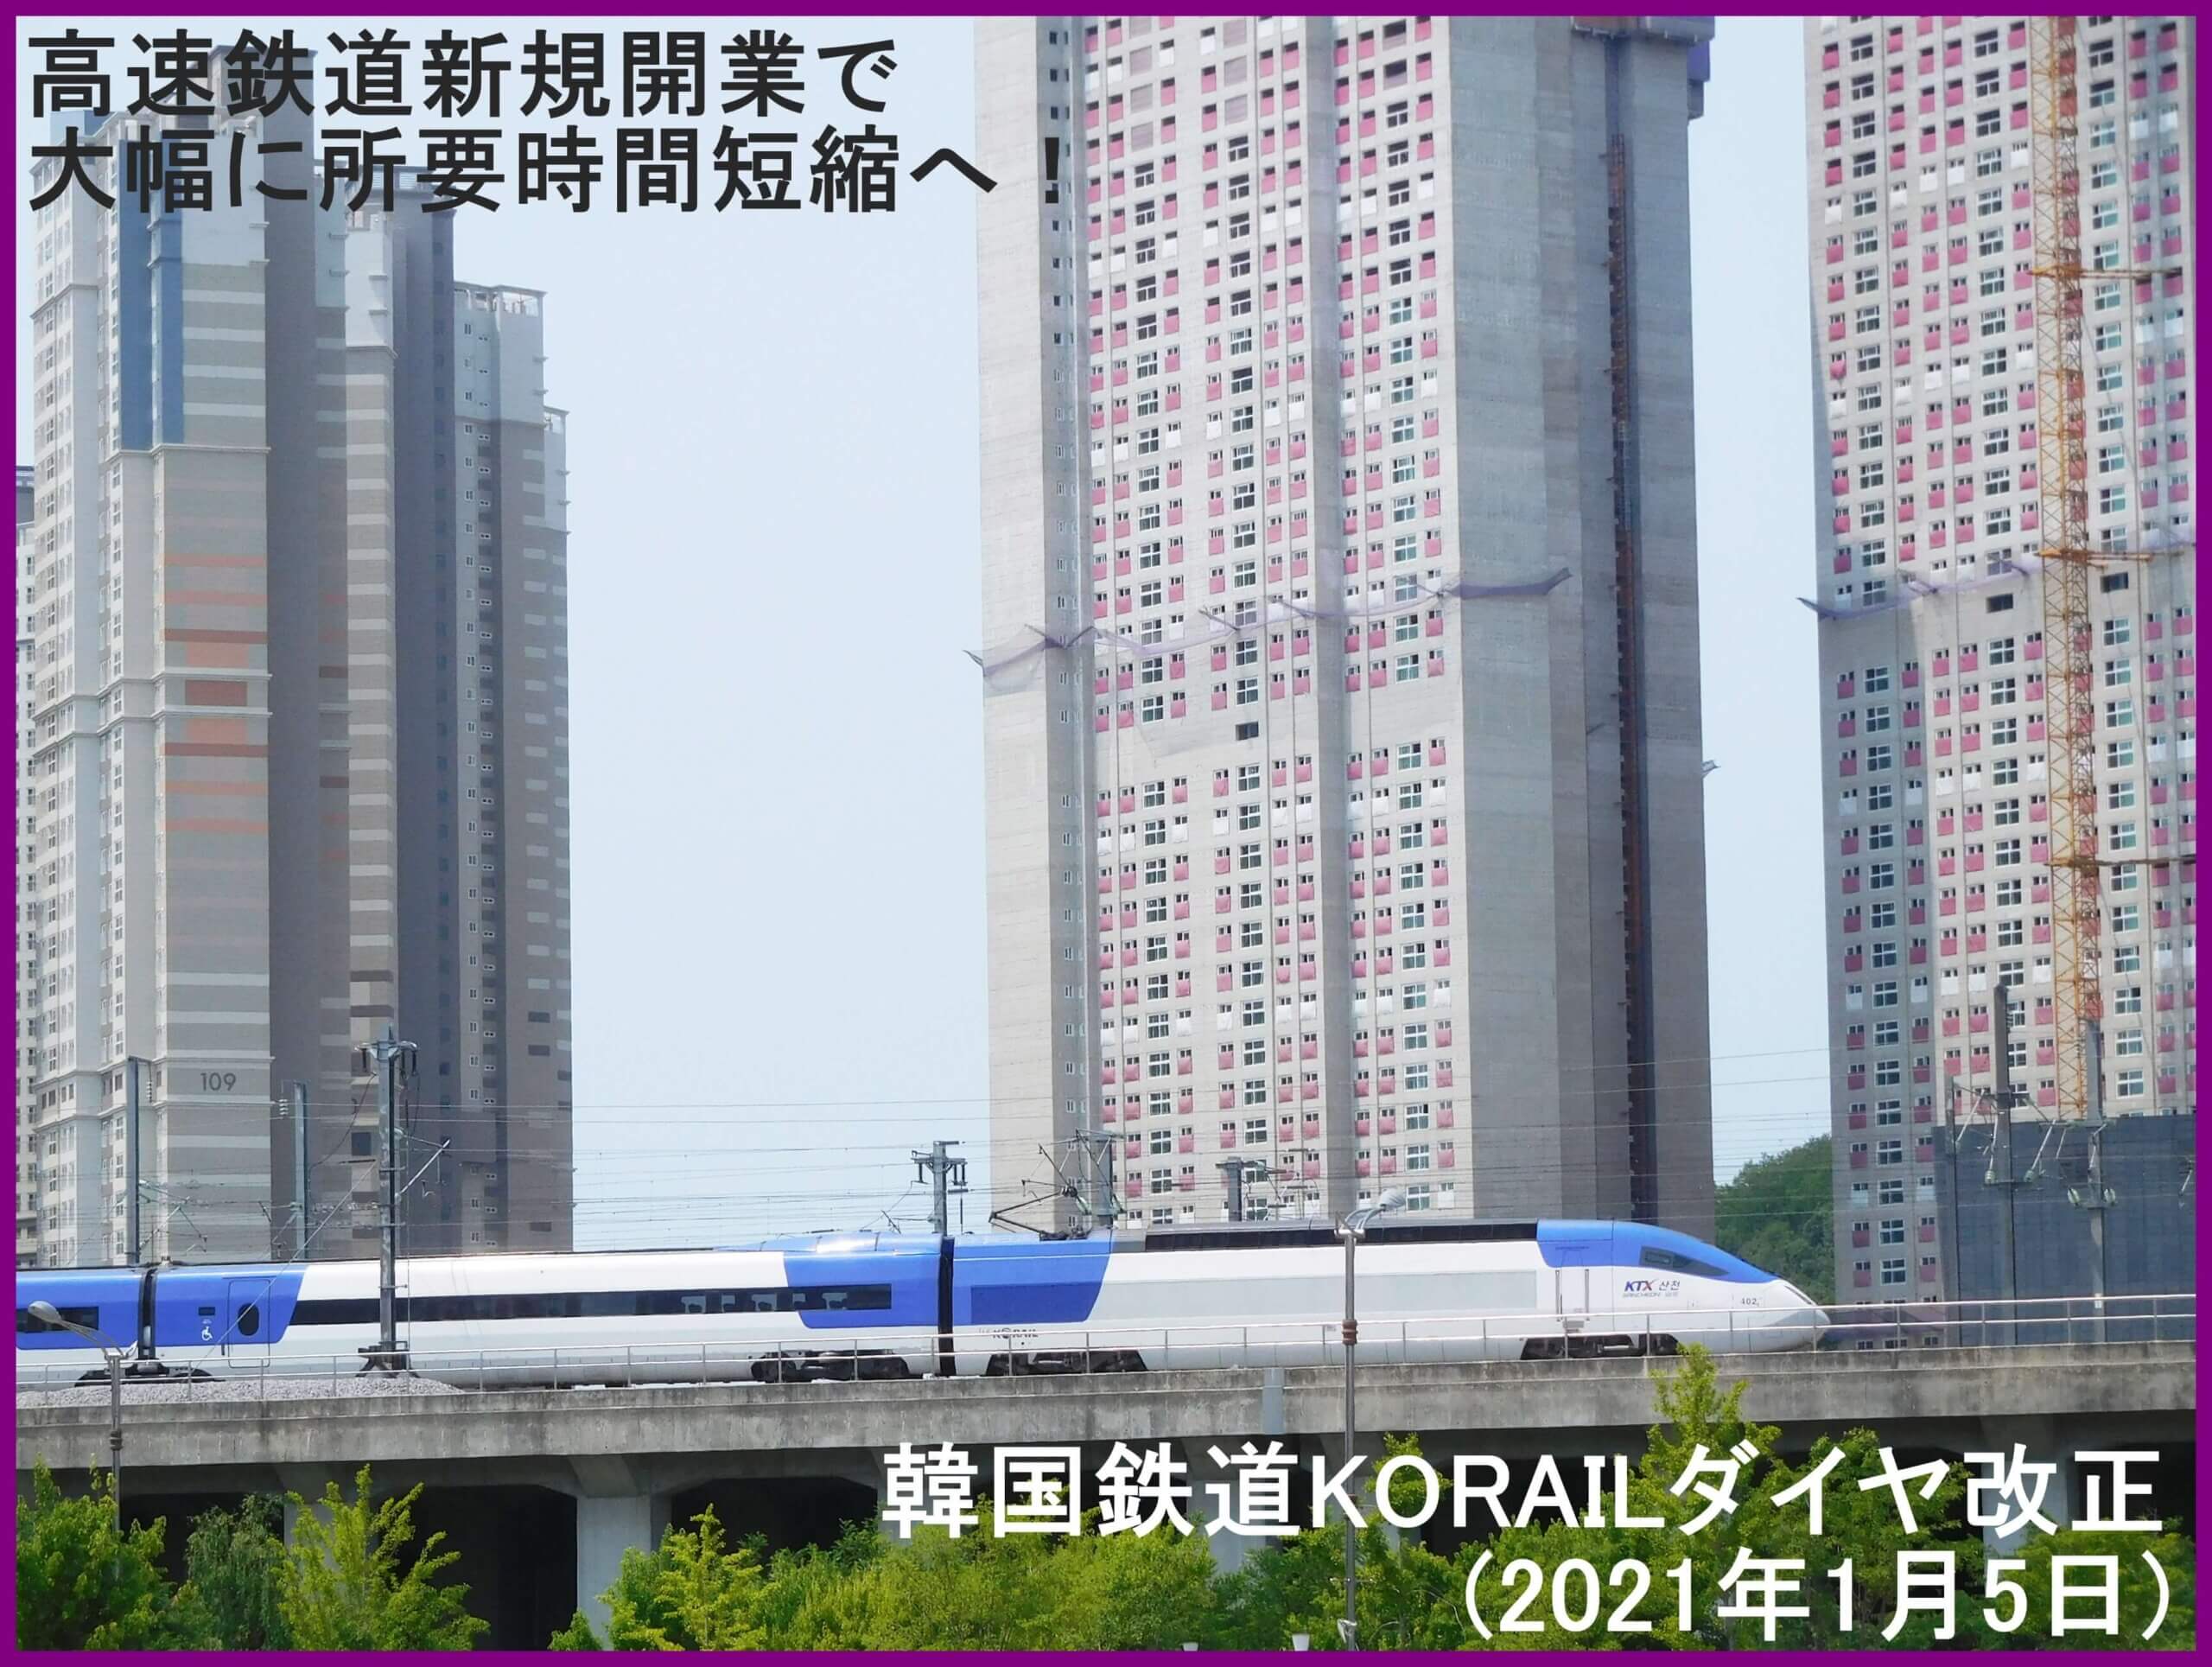 高速鉄道新規開業で大幅に所要時間短縮へ！　韓国鉄道KORAILダイヤ改正(2021年1月5日)